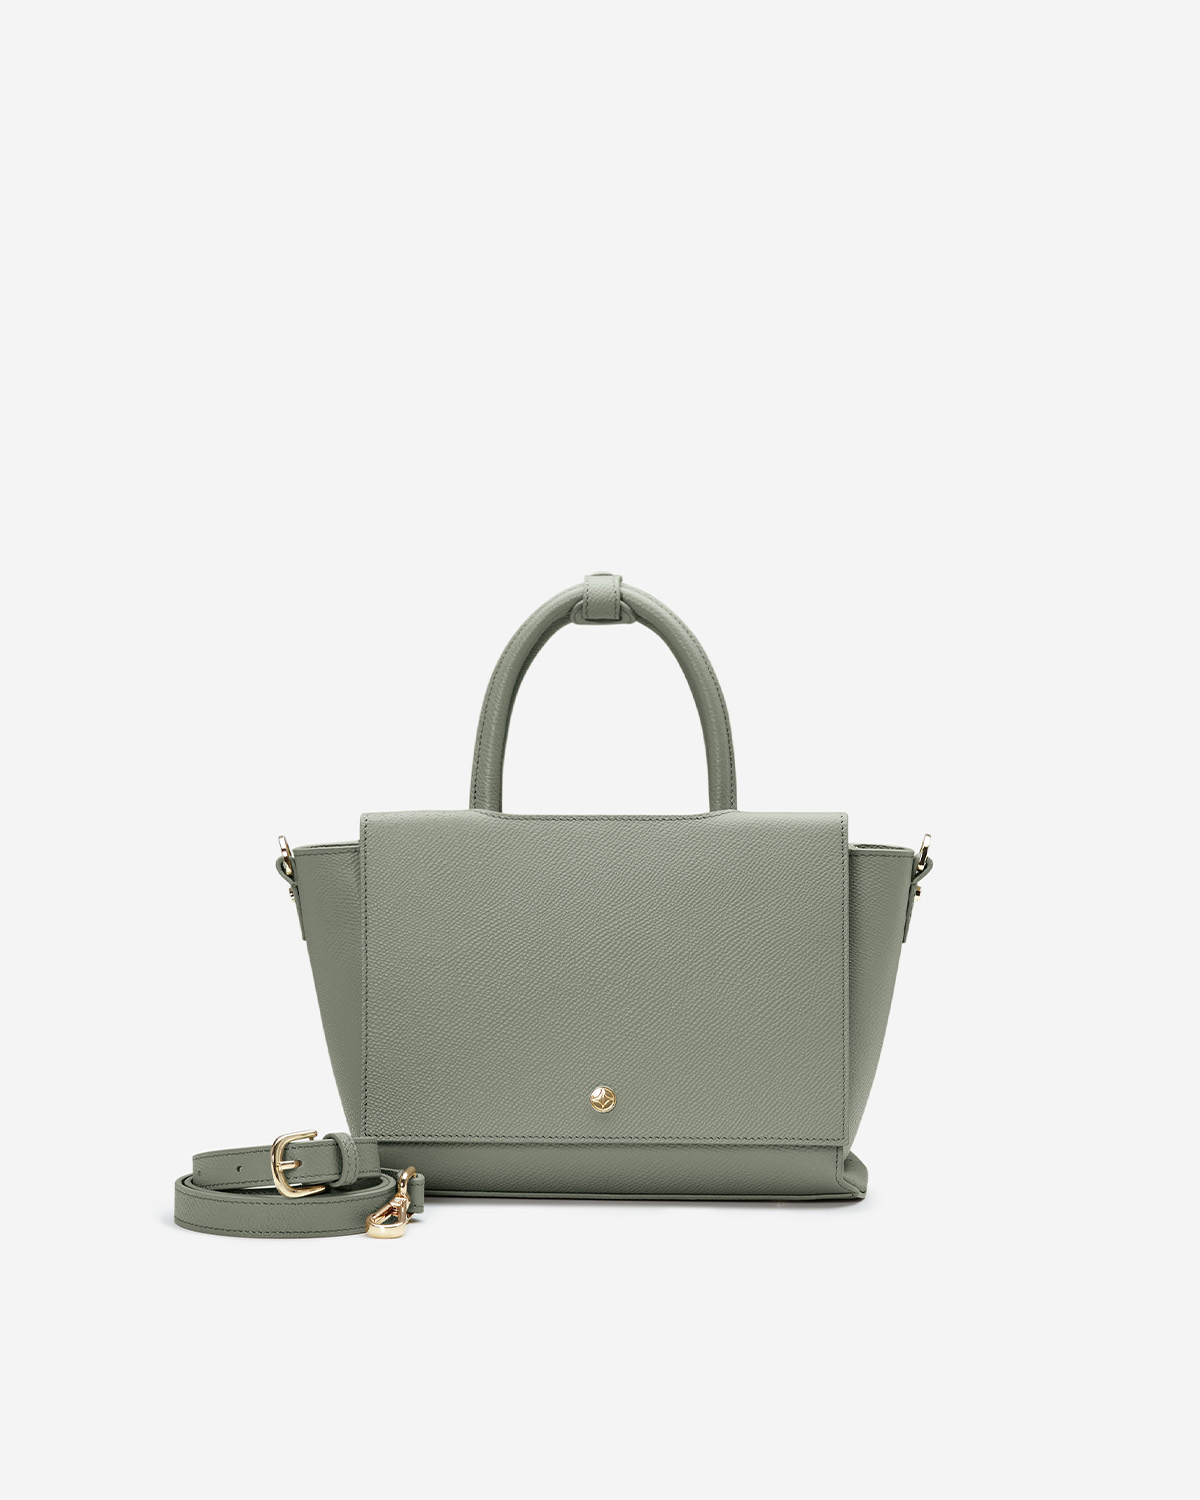 กระเป๋าถือหนังแท้ VERA Heidi Leather Handbag, ไซส์ 28 สี Sage